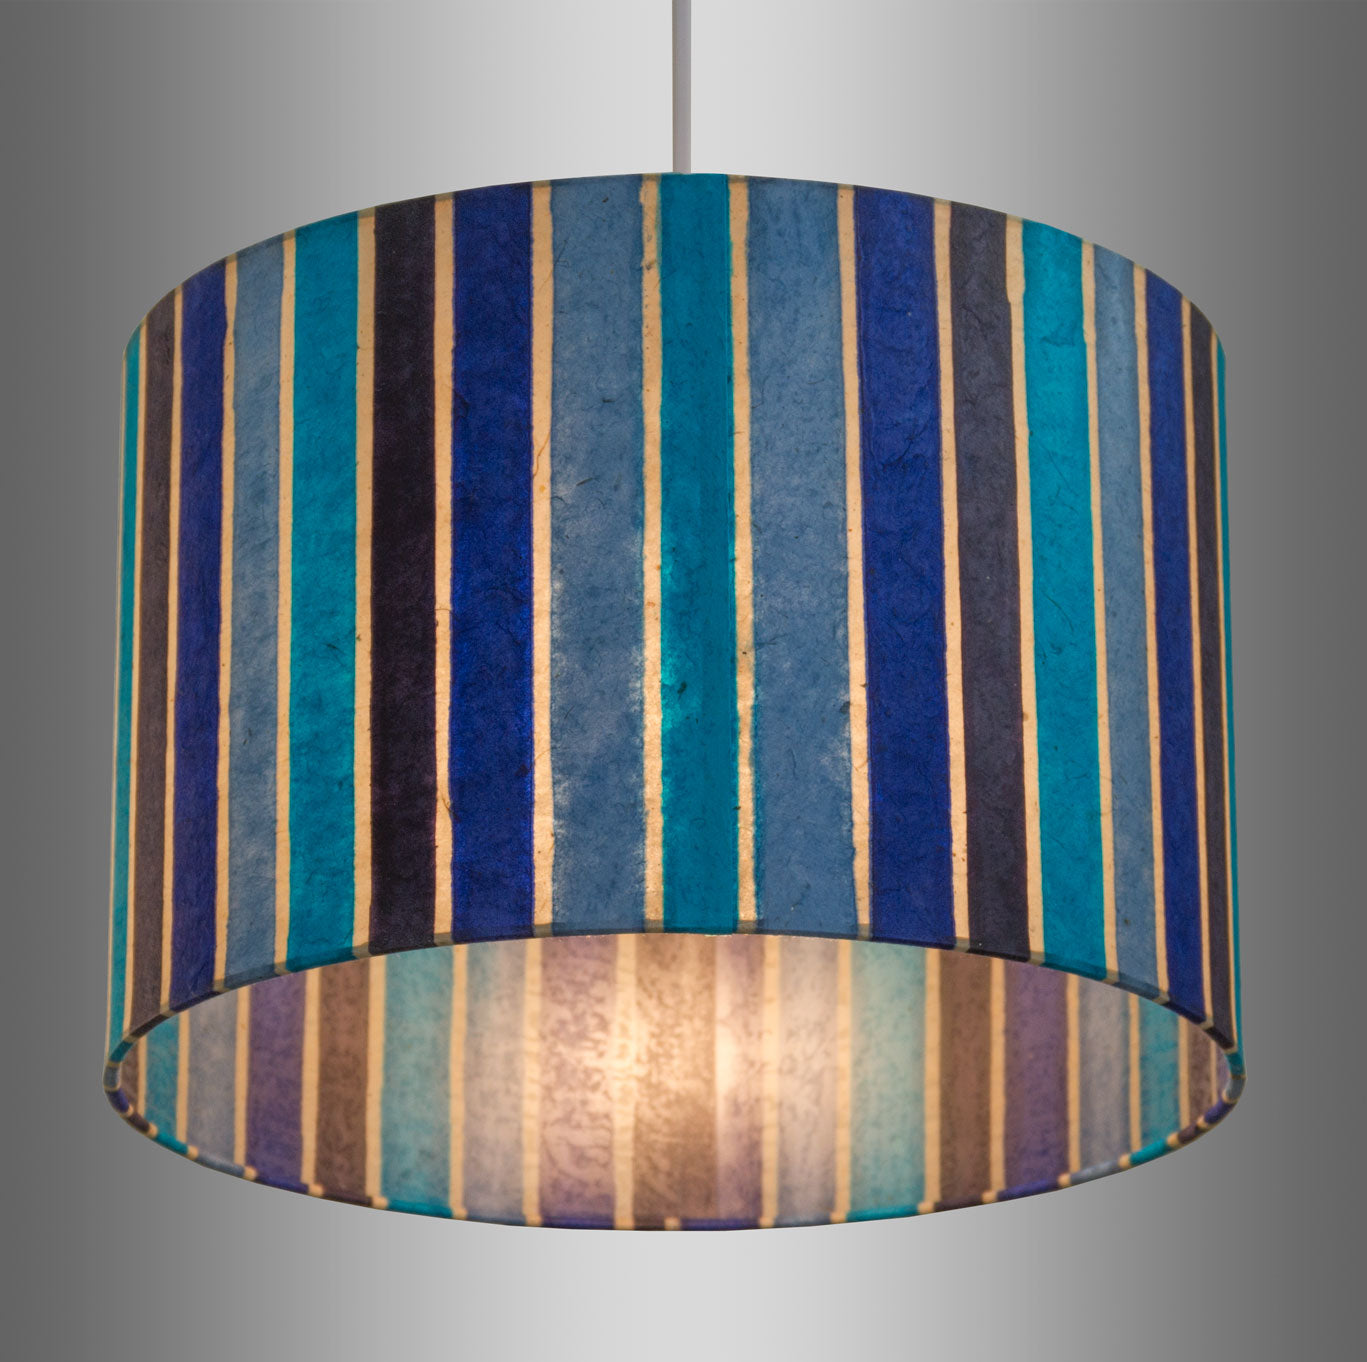 Oval Lamp Shade - P05 - Batik Stripes Blue, 30cm(w) x 30cm(h) x 22cm(d)